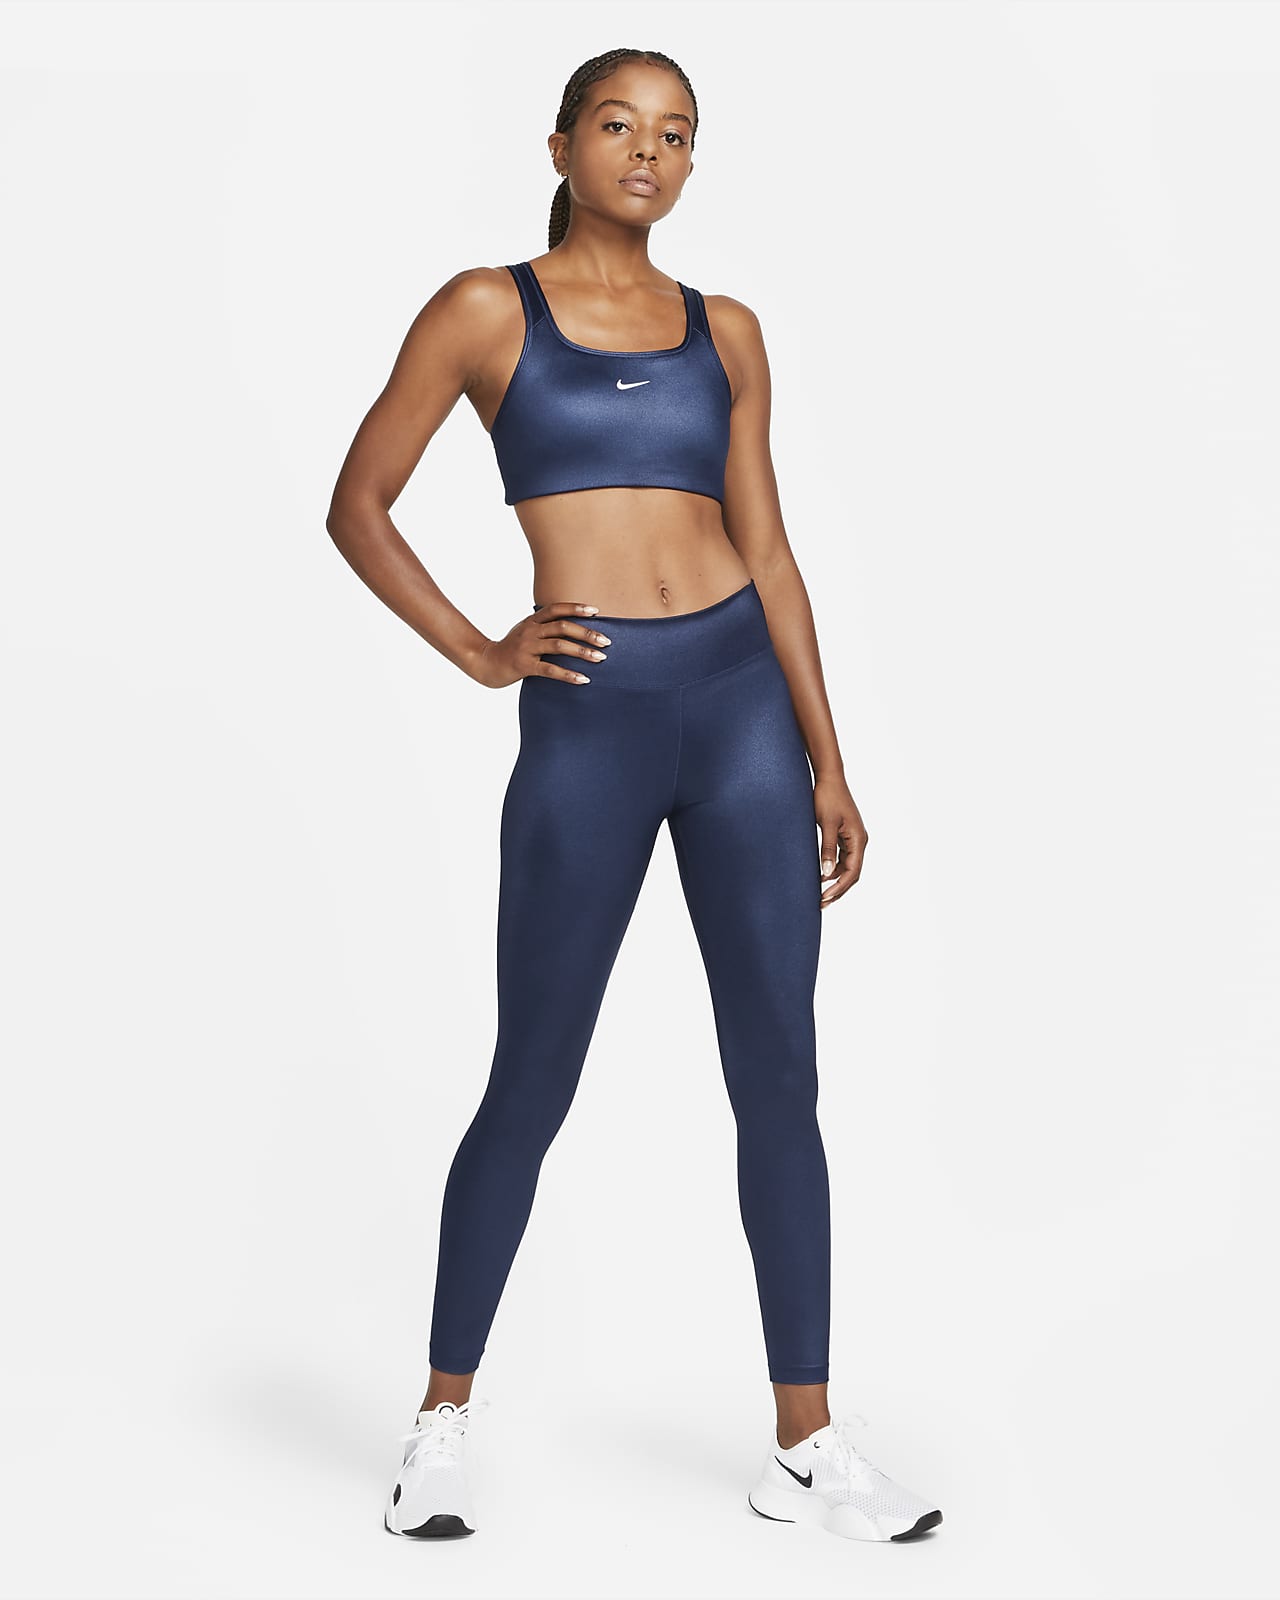 Nike sz S Pro FIERCE Sports Bra Medium Support NEW $50 620279-703 Volt w  Grey